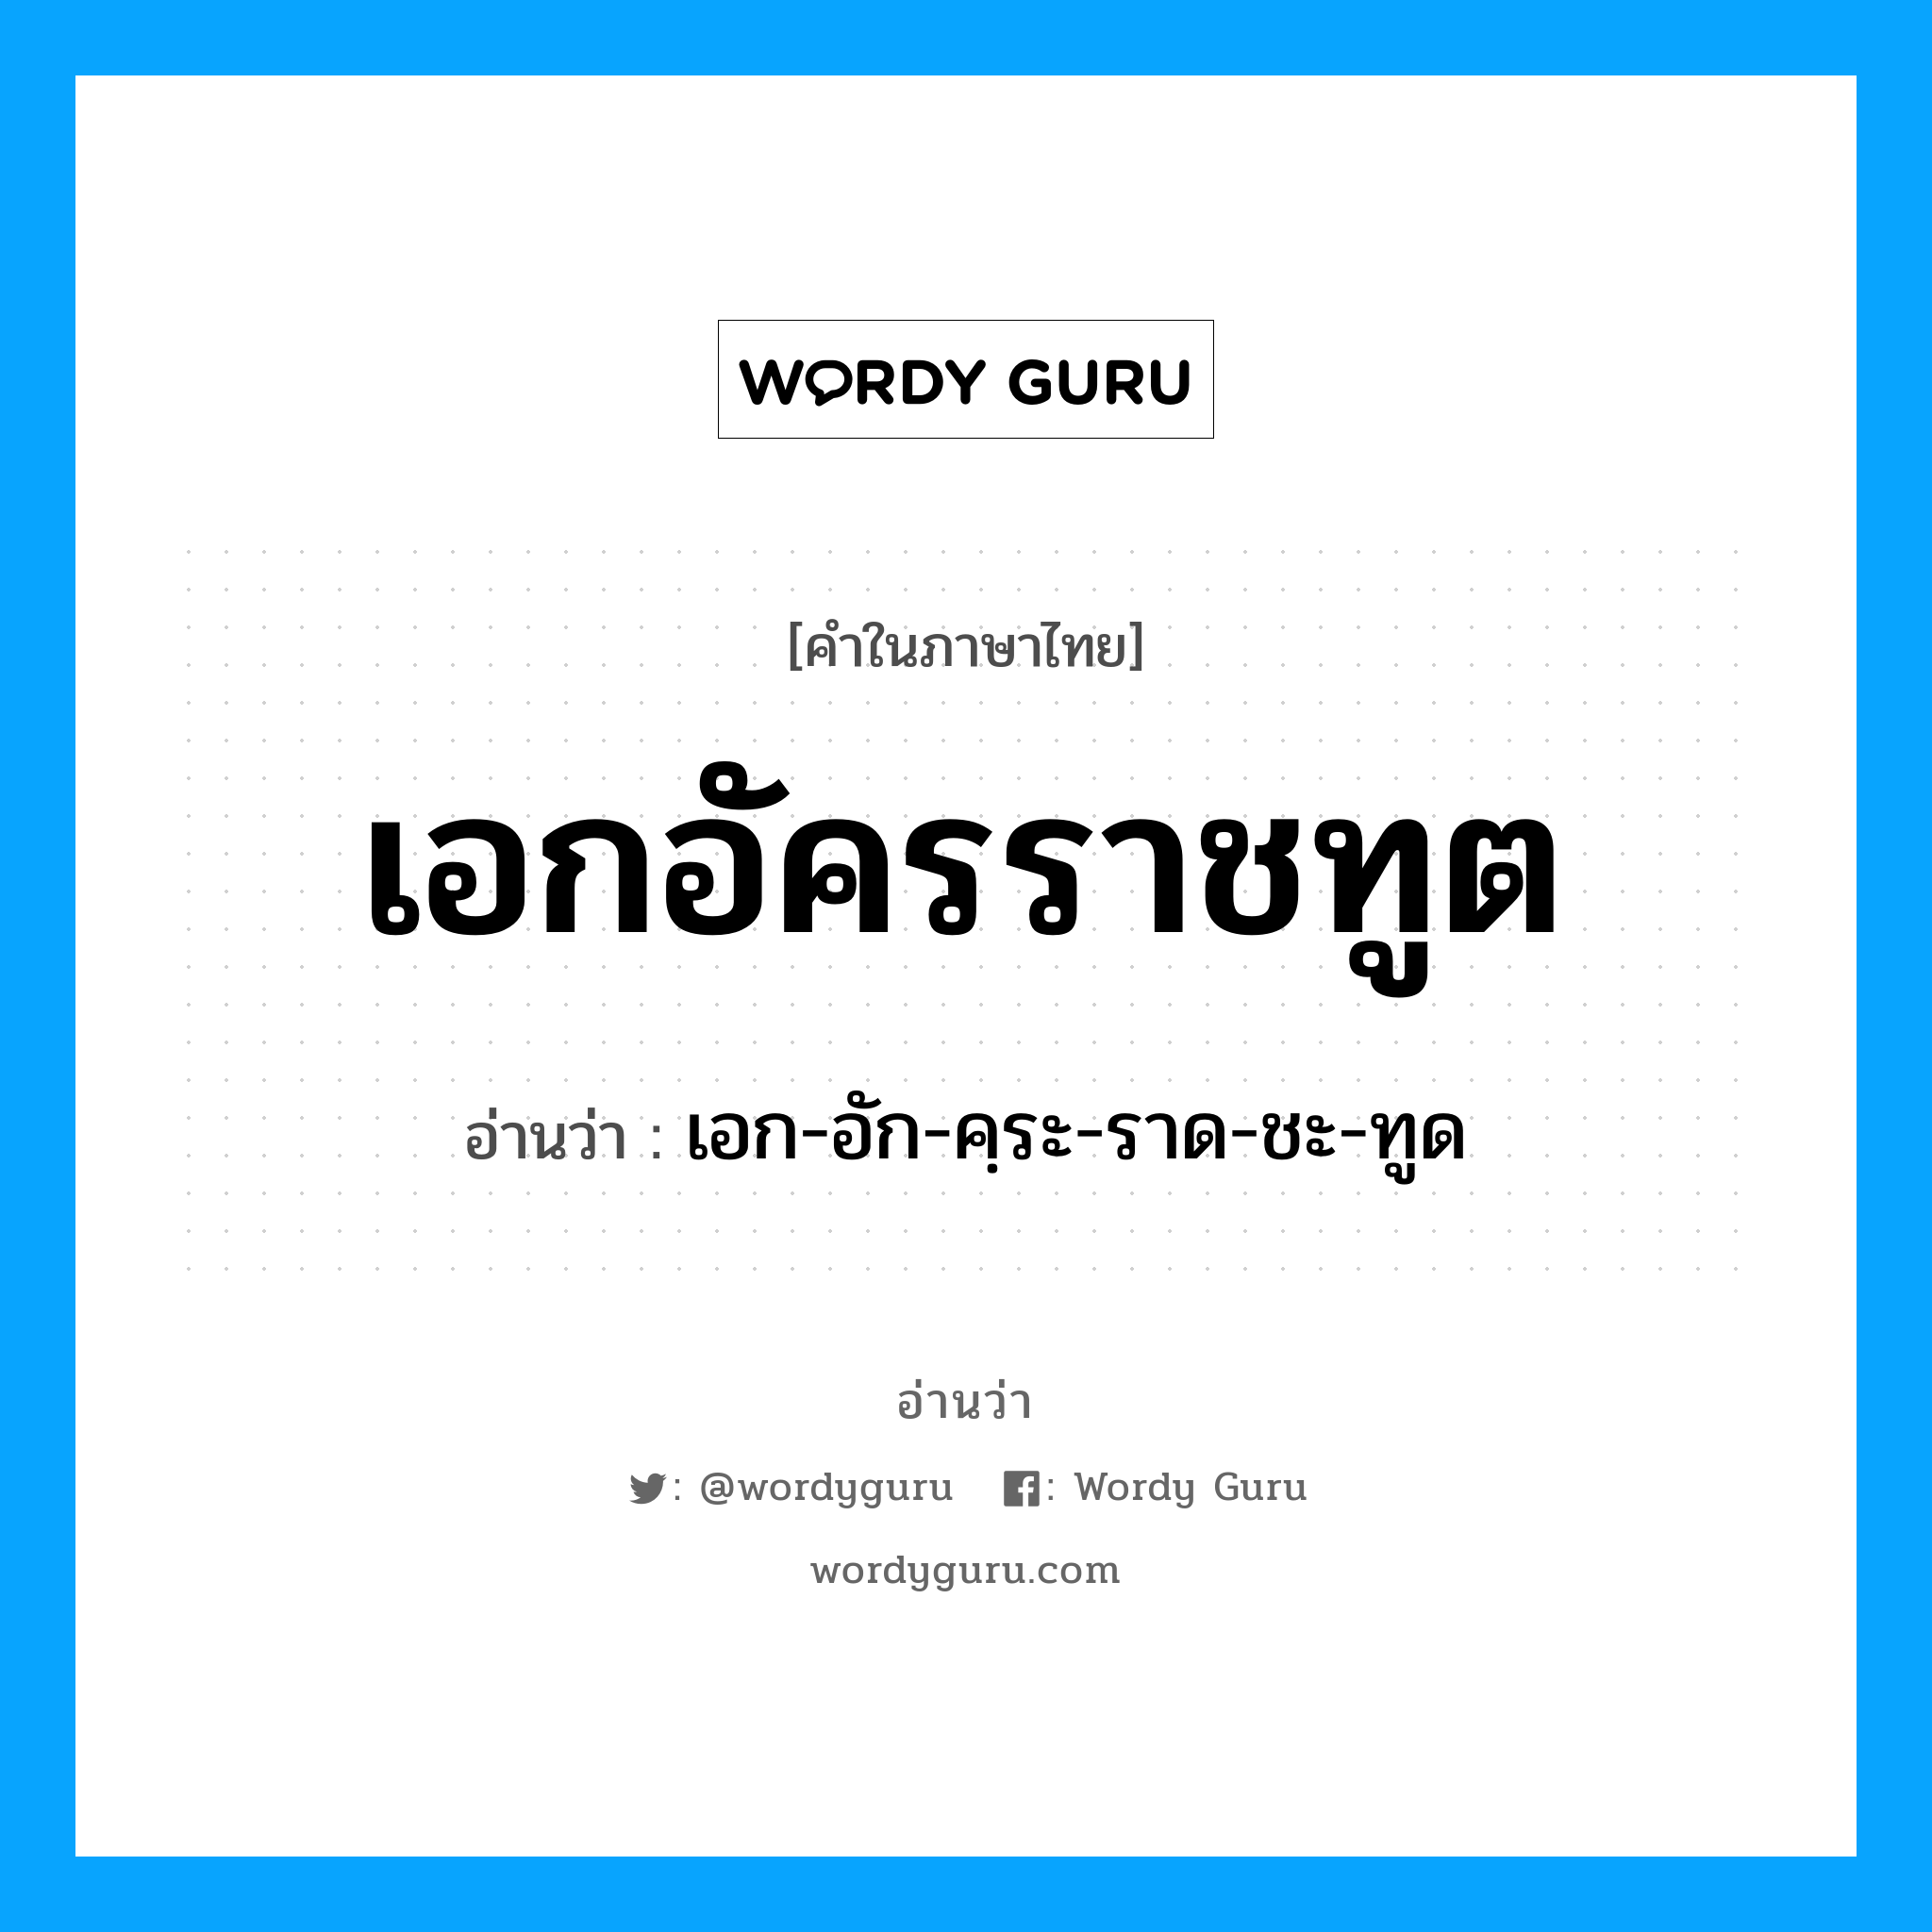 เอก-อัก-คฺระ-ราด-ชะ-ทูด เป็นคำอ่านของคำไหน?, คำในภาษาไทย เอก-อัก-คฺระ-ราด-ชะ-ทูด อ่านว่า เอกอัครราชทูต